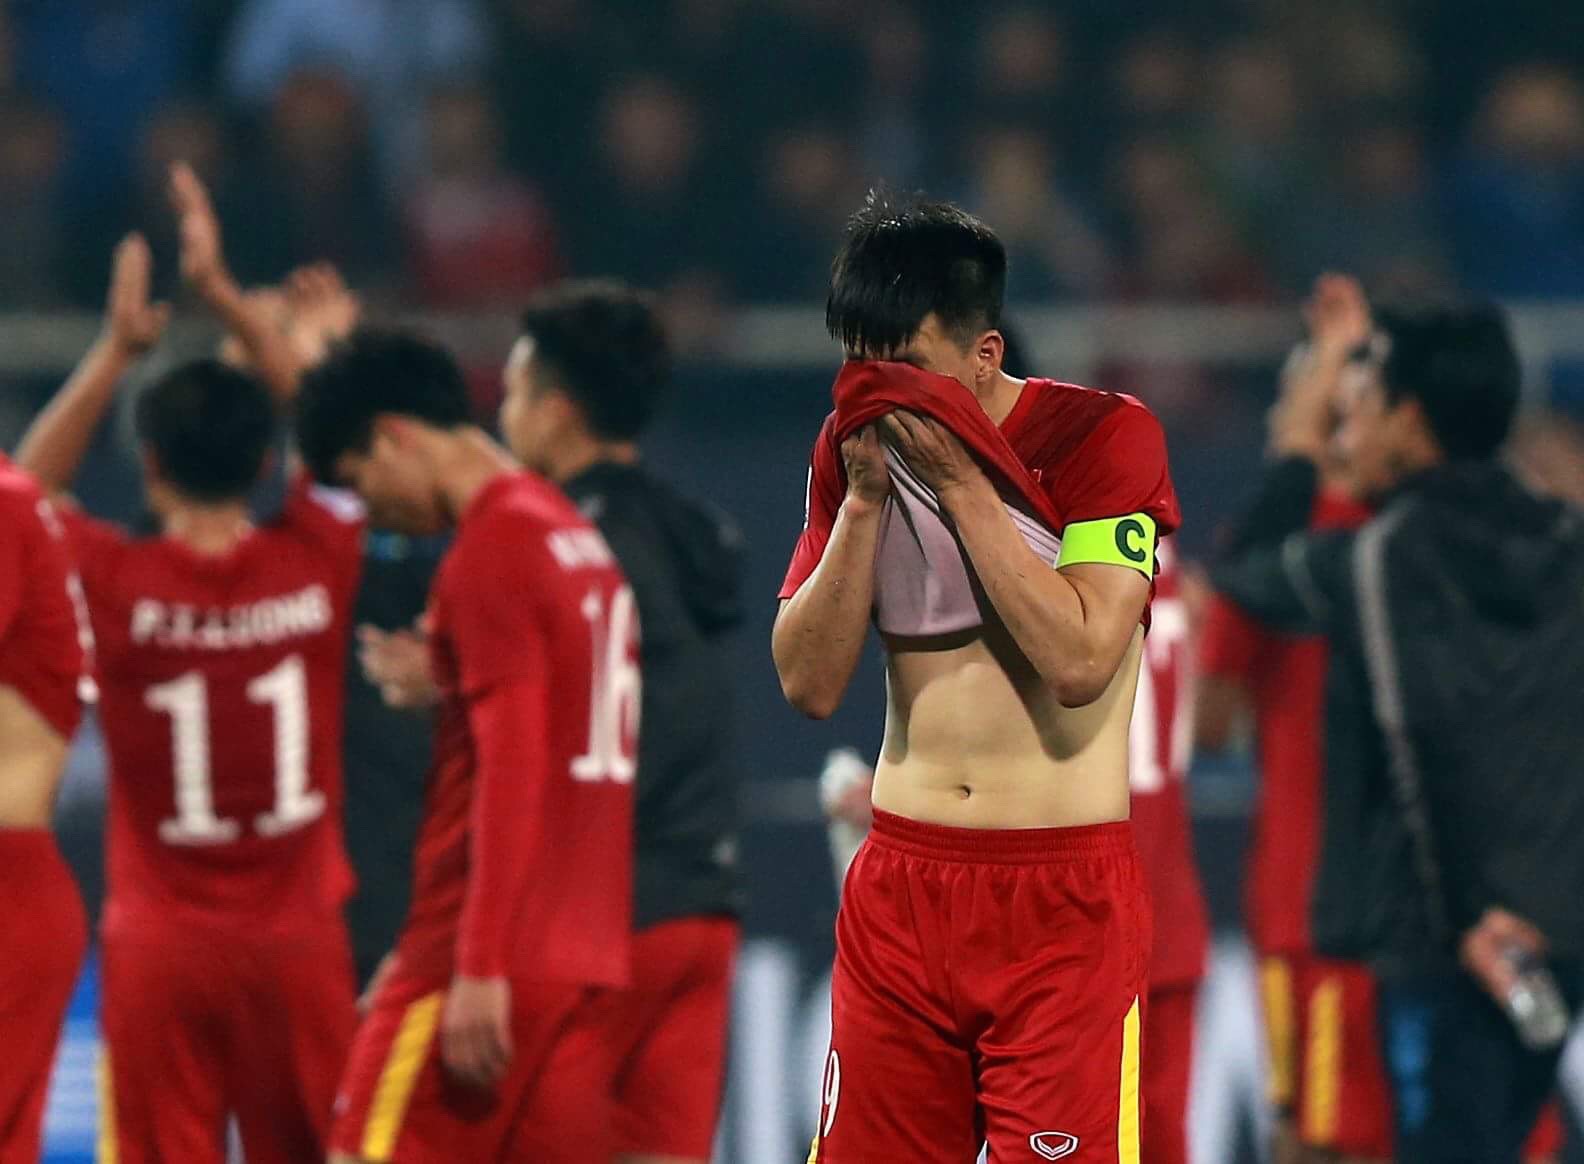 Ngọc Hải đã phải chịu trách nhiệm cho những sai lầm trong trận đấu với Thái Lan khiến ĐT Việt Nam thua. Hãy xem hình ảnh những cầu thủ Việt Nam trải qua những giây phút khóc nghẹn sau trận đấu, bên cạnh Công Vinh và Thành Lương.